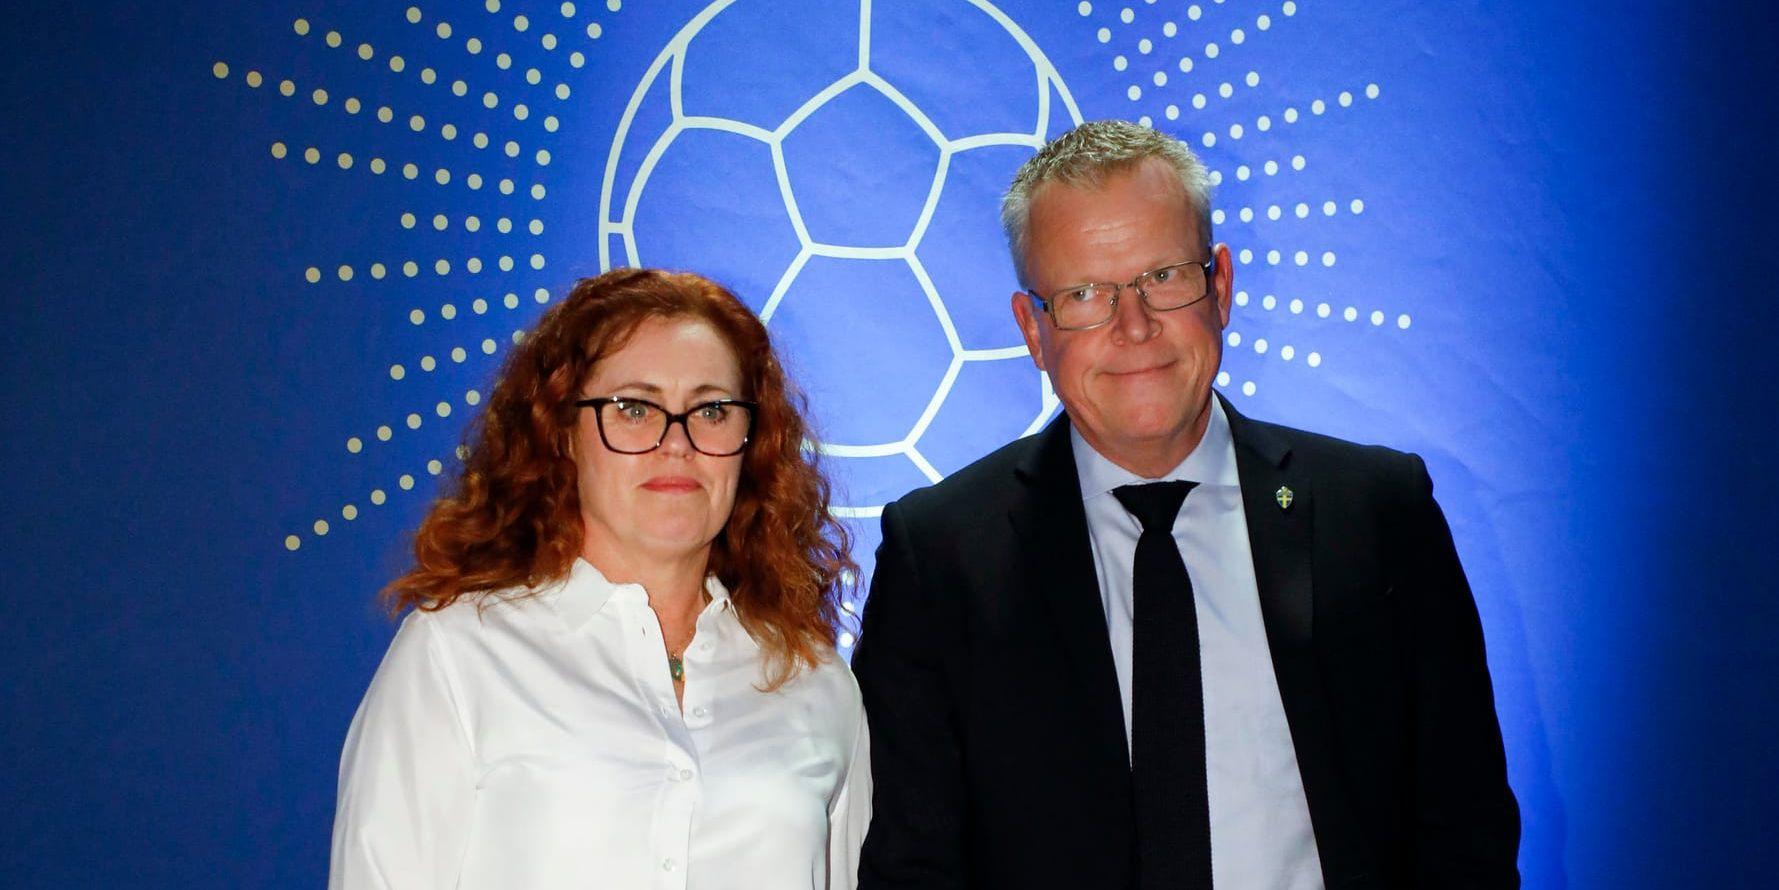 Janne Andersson och frun Ulrika Andersson anländer till Fotbollsgalan 2017 på Ericsson Globe Arena.